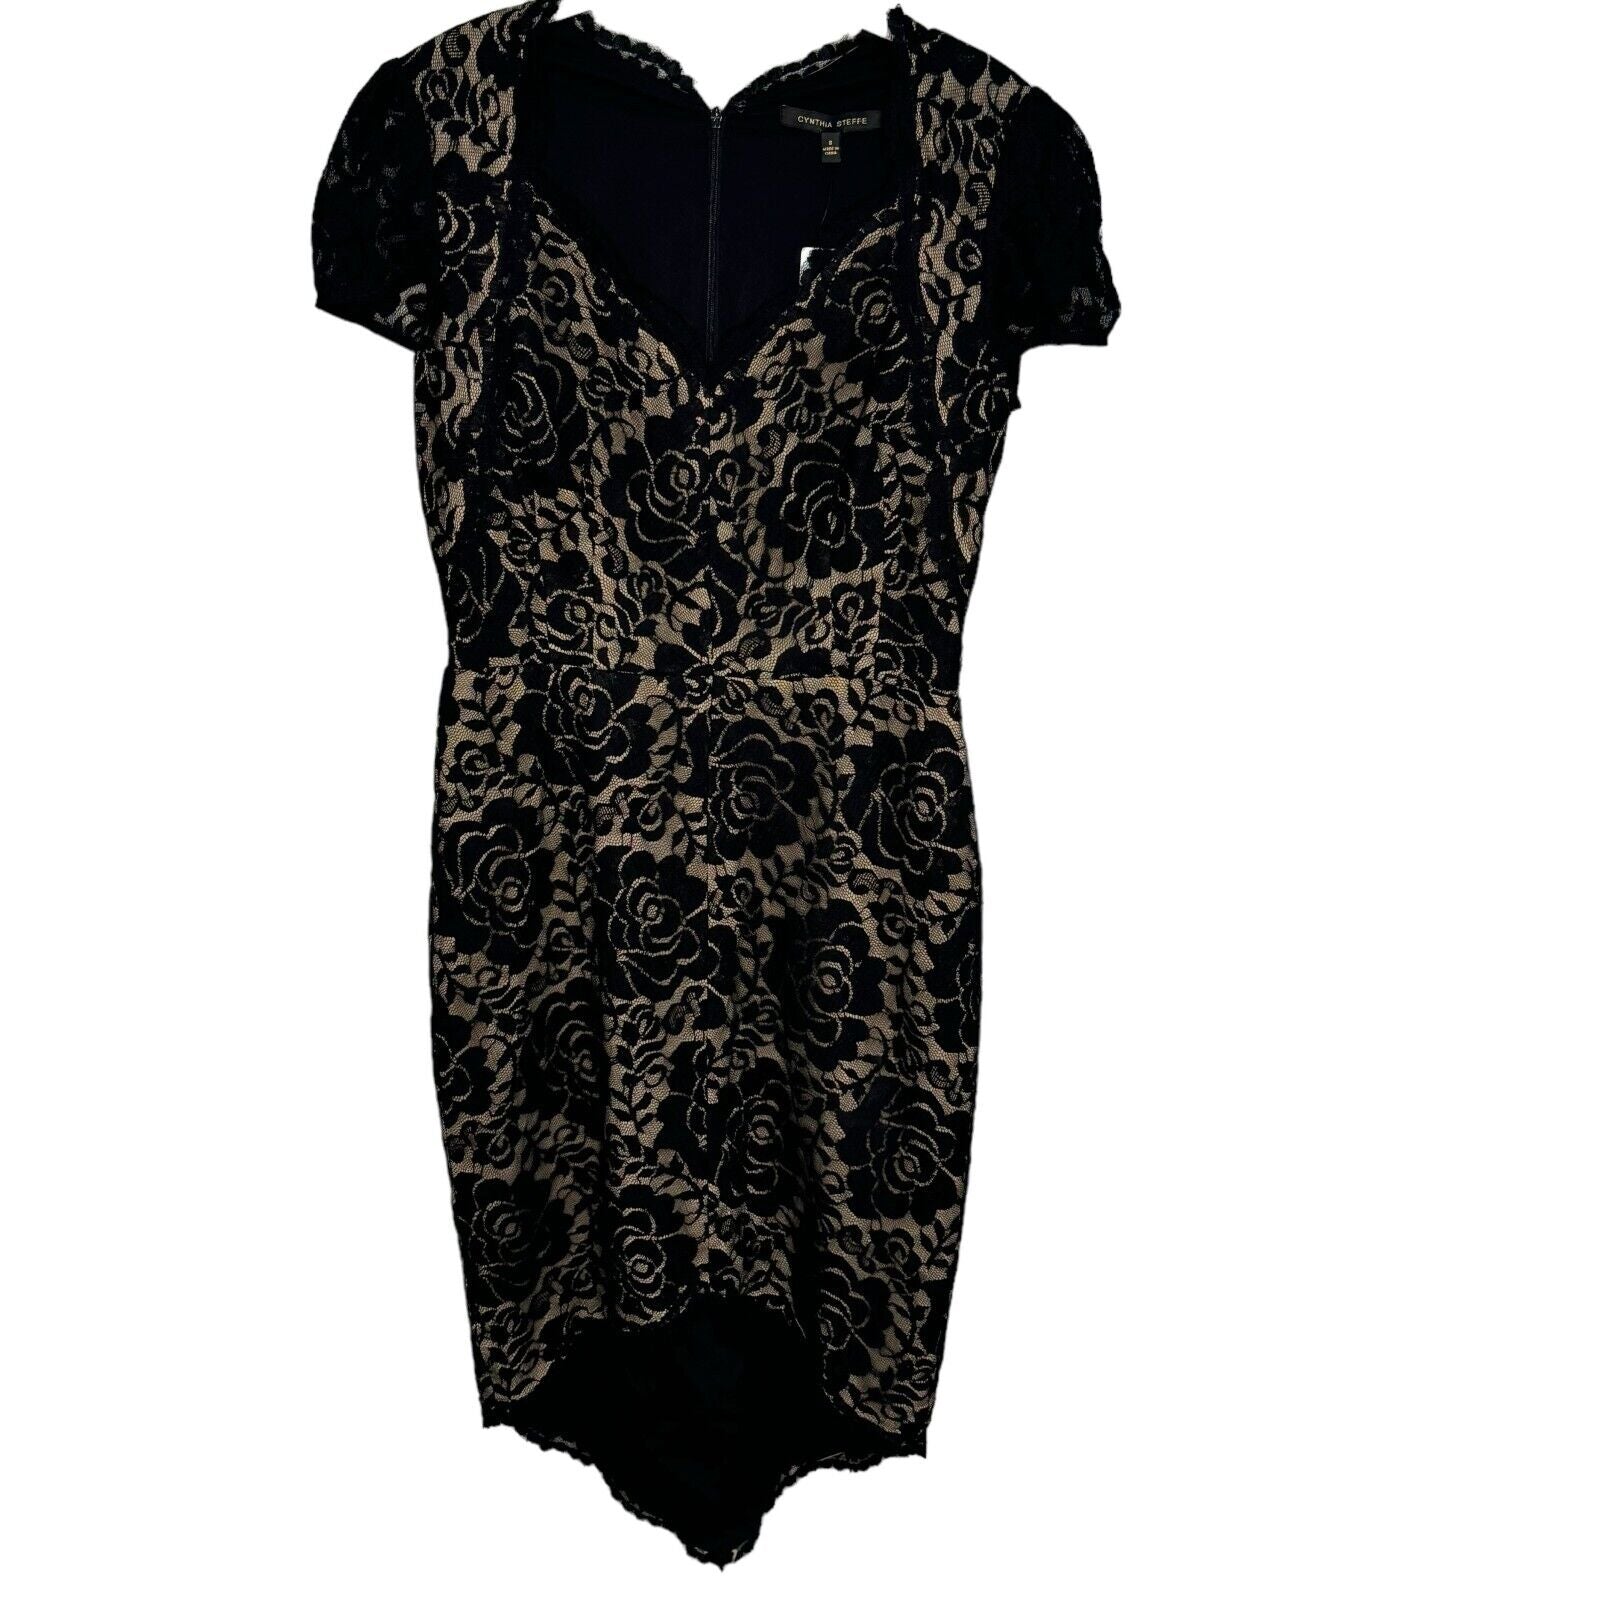 Cynthia Steffe Black Floral Lace Dress Size 8 NEW $298